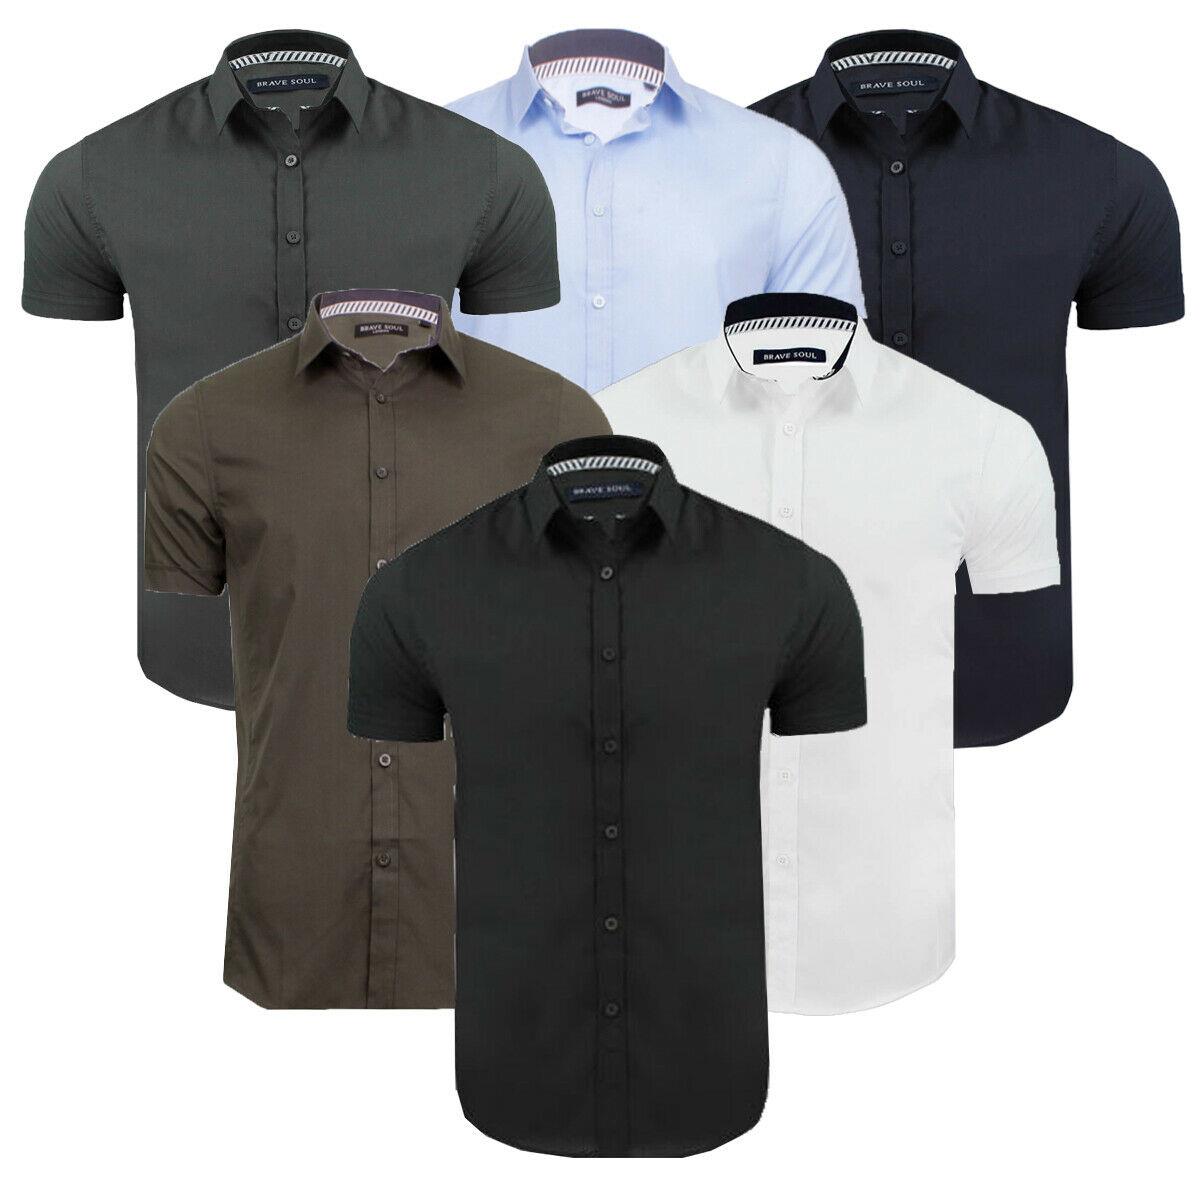 Mens Plain Shirt Short Sleeve Work Office Shirt Cotton Casual Formal ...